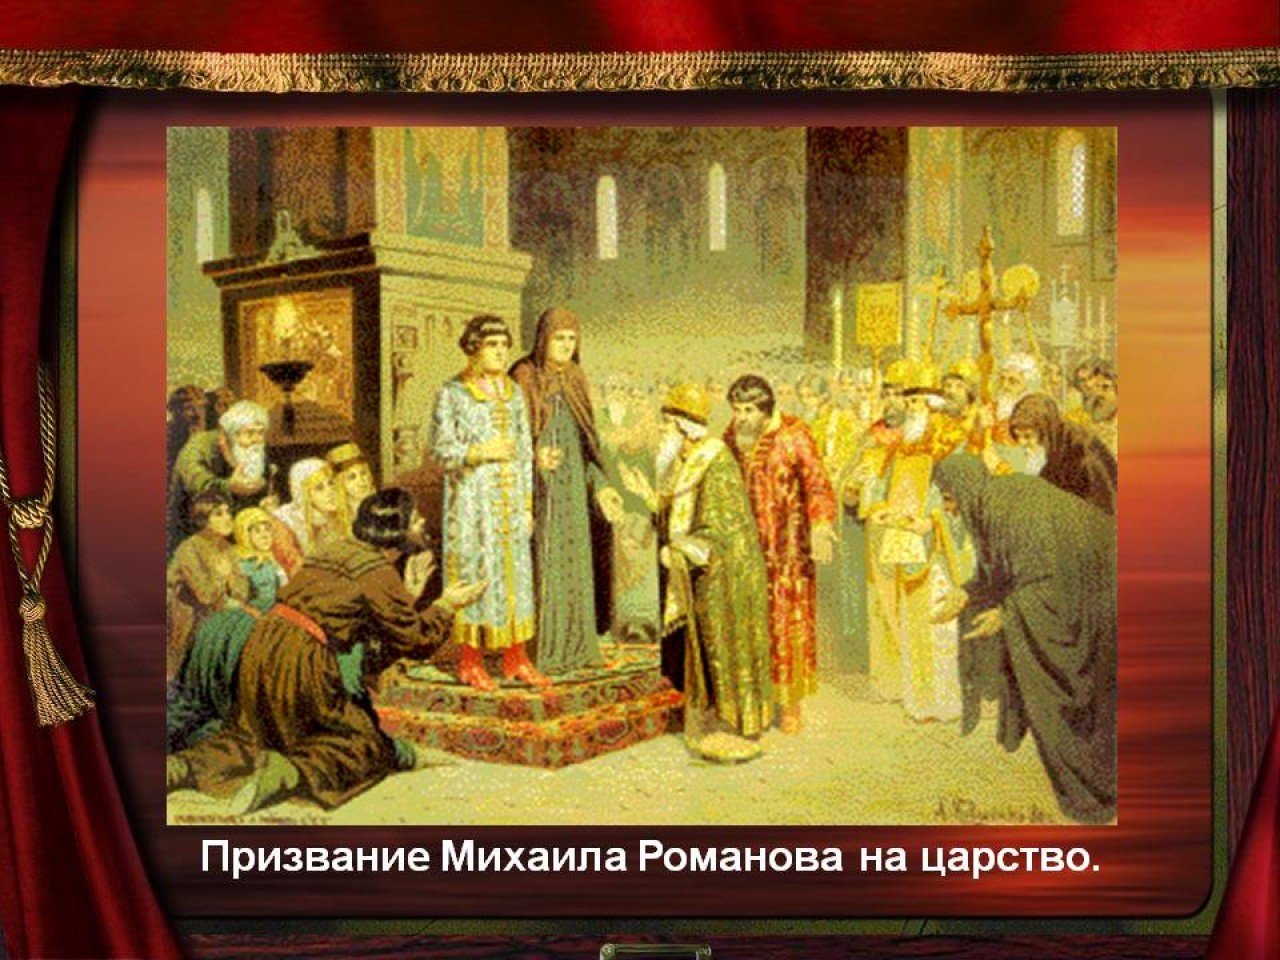 1613 Избрание на царство Михаила Федоровича Романова